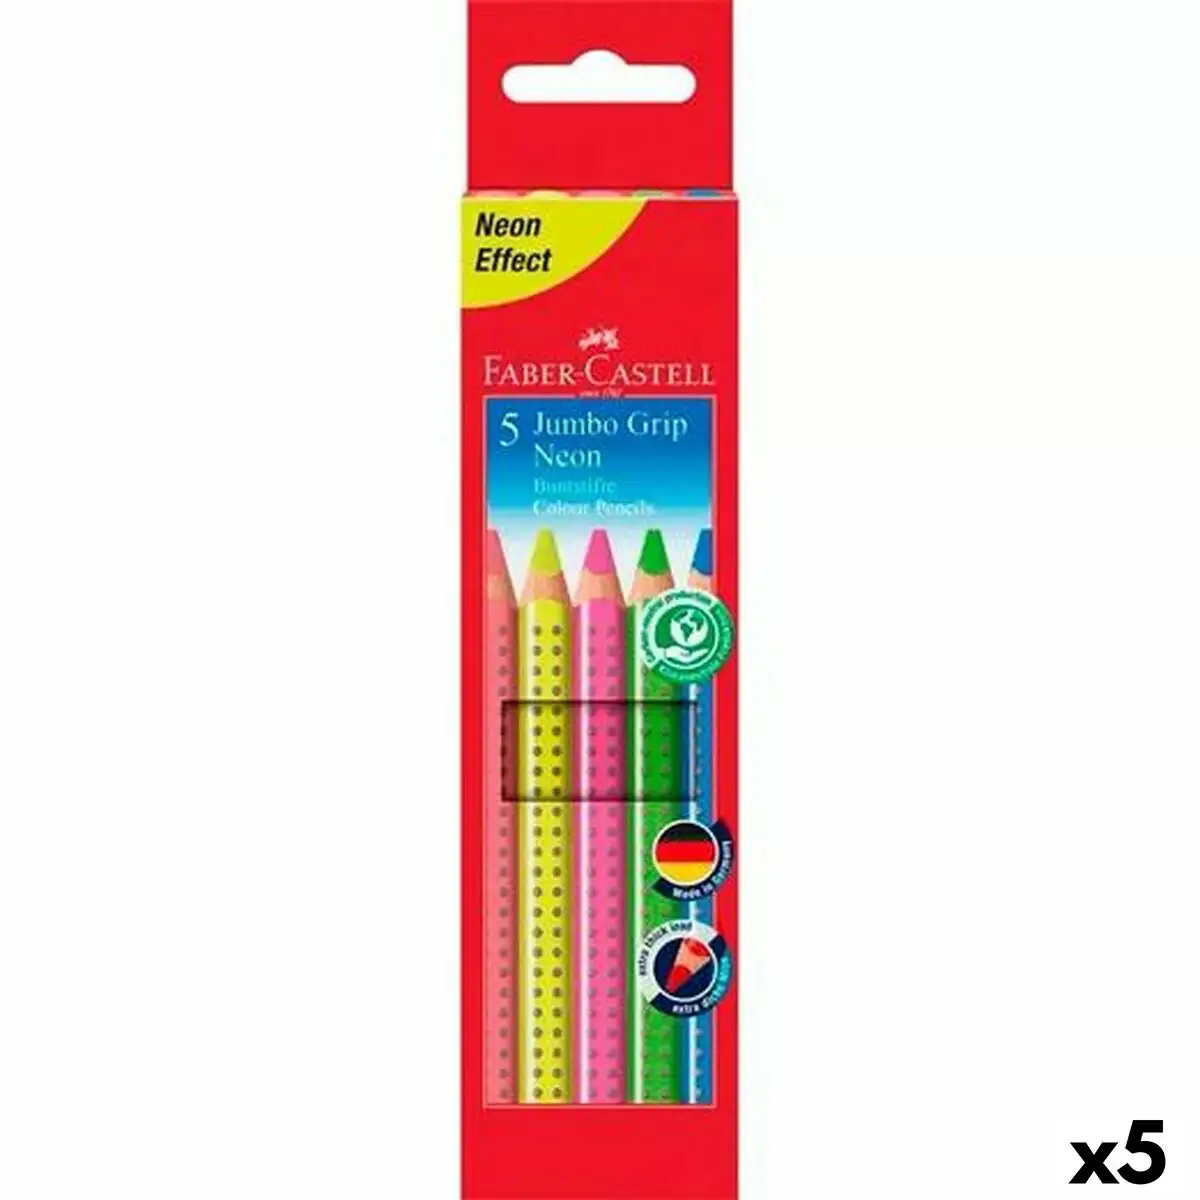 Crayons de couleur faber castell multicouleur neon 5 unites _2080. DIAYTAR SENEGAL - Où Choisir Devient une Découverte. Explorez notre boutique en ligne et trouvez des articles qui vous surprennent et vous ravissent à chaque clic.